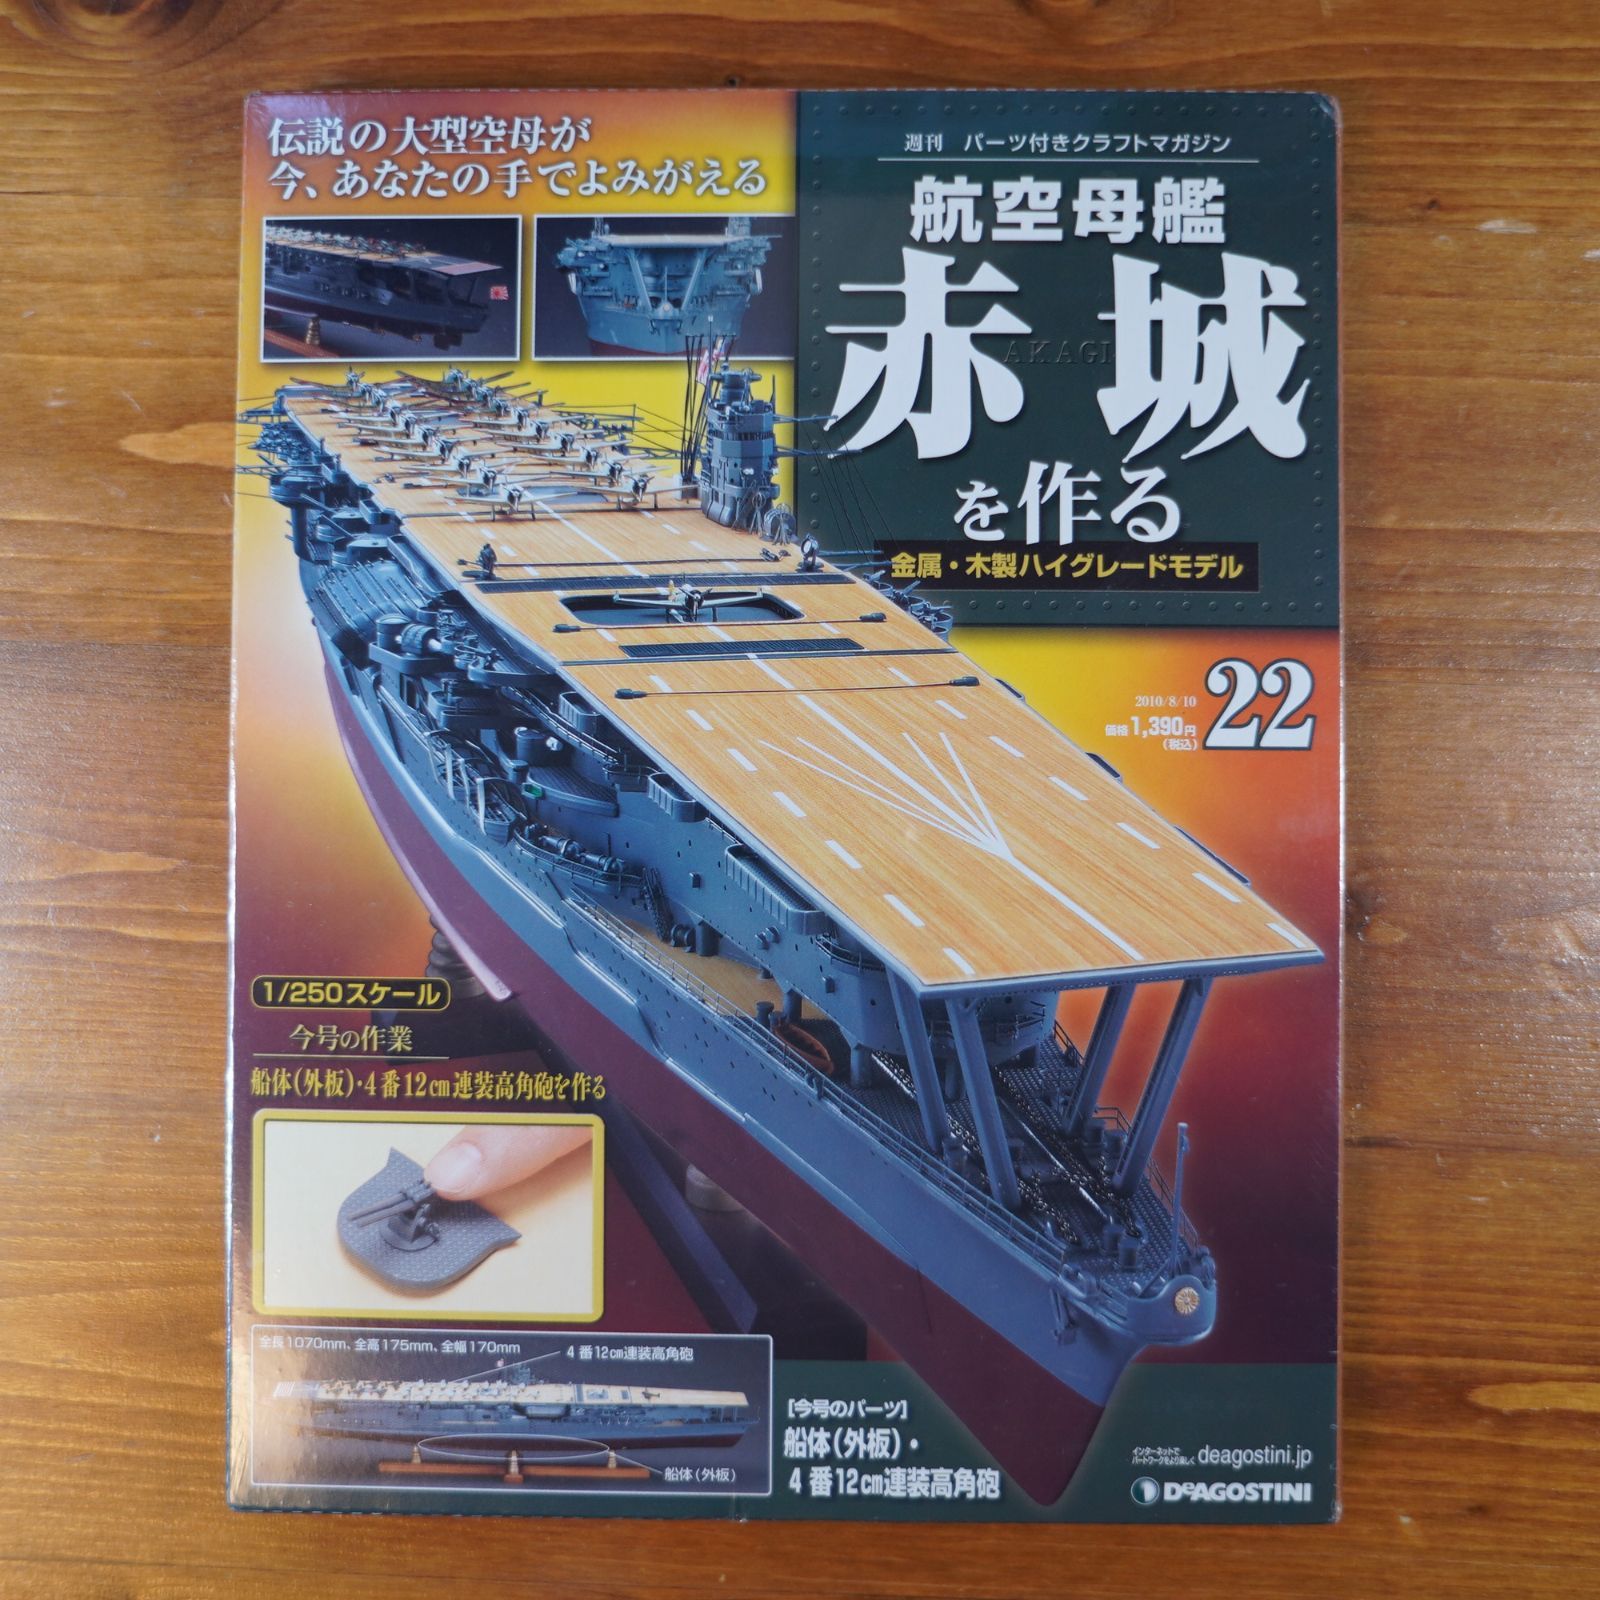 赤城を作る 創刊号 新登場 - 鉄道模型